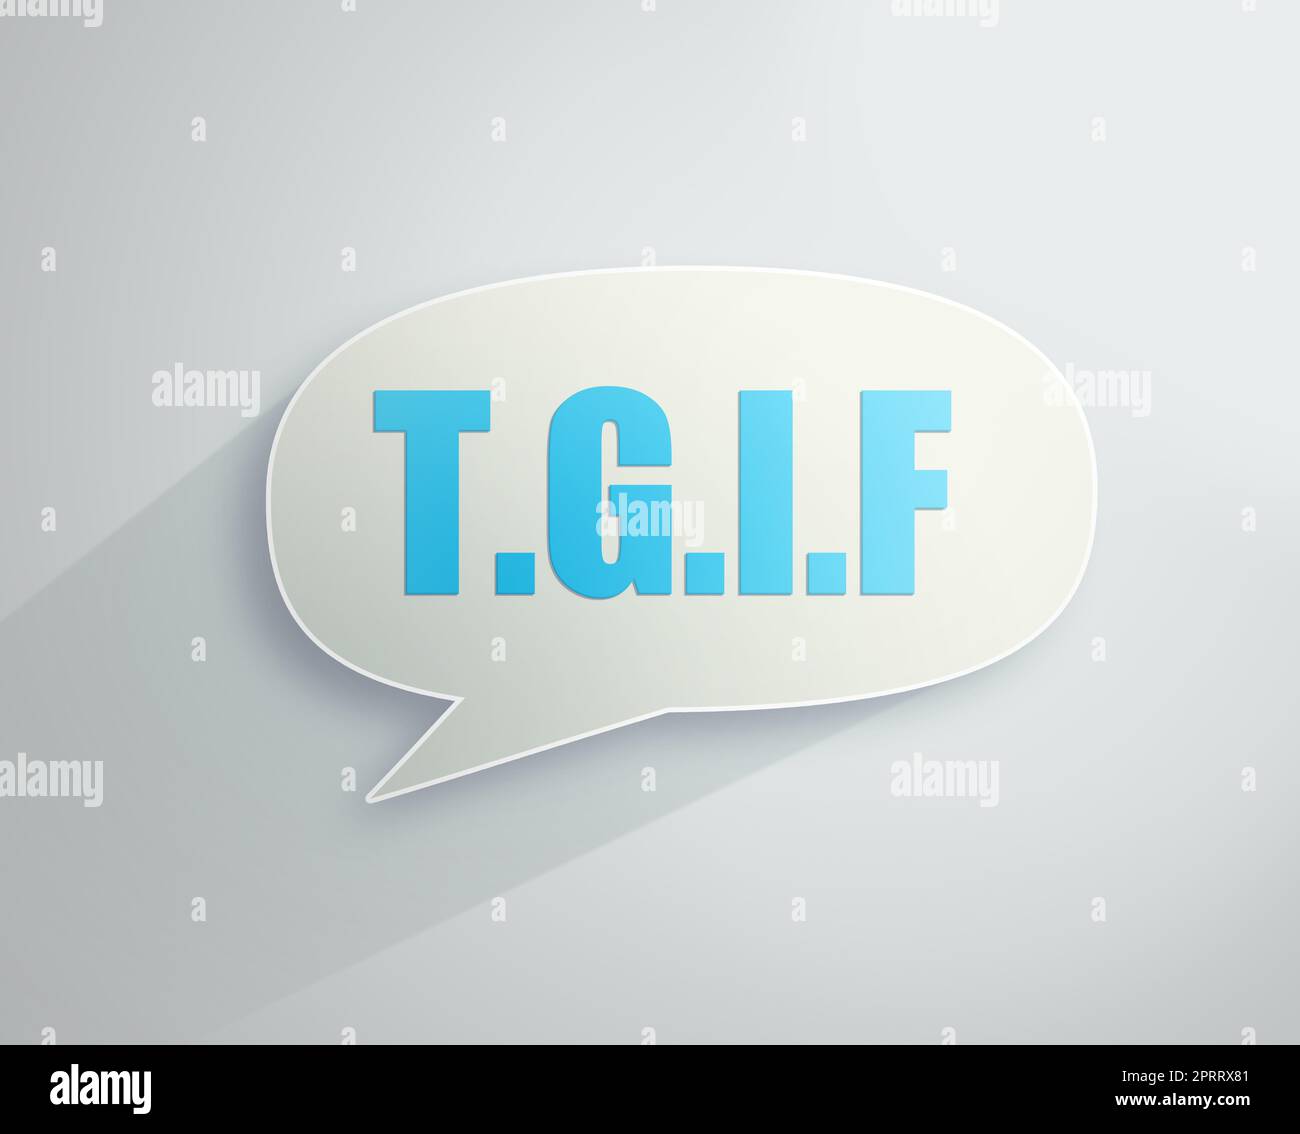 Es ist das Wochenende. Illustration einer Sprechblase mit TGIF darin. Stockfoto